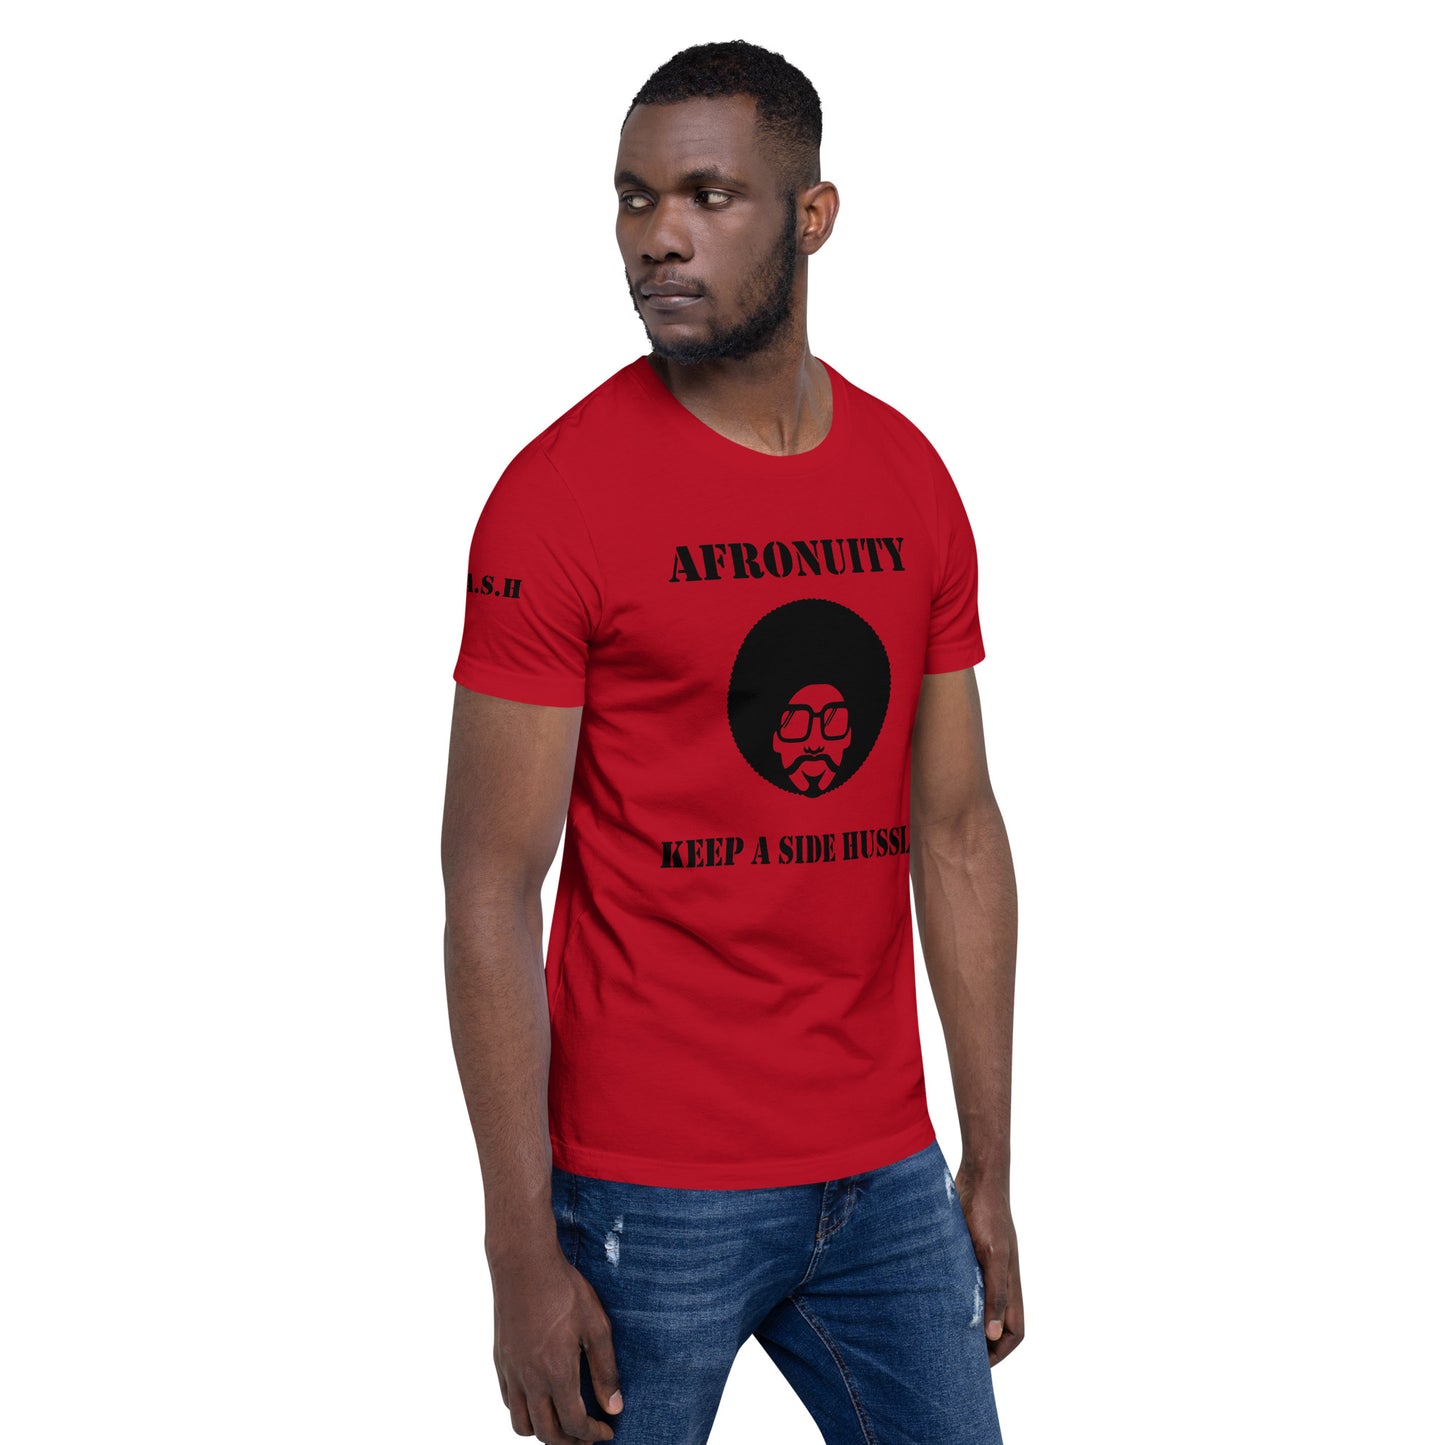 Afronuity Unisex t-shirt